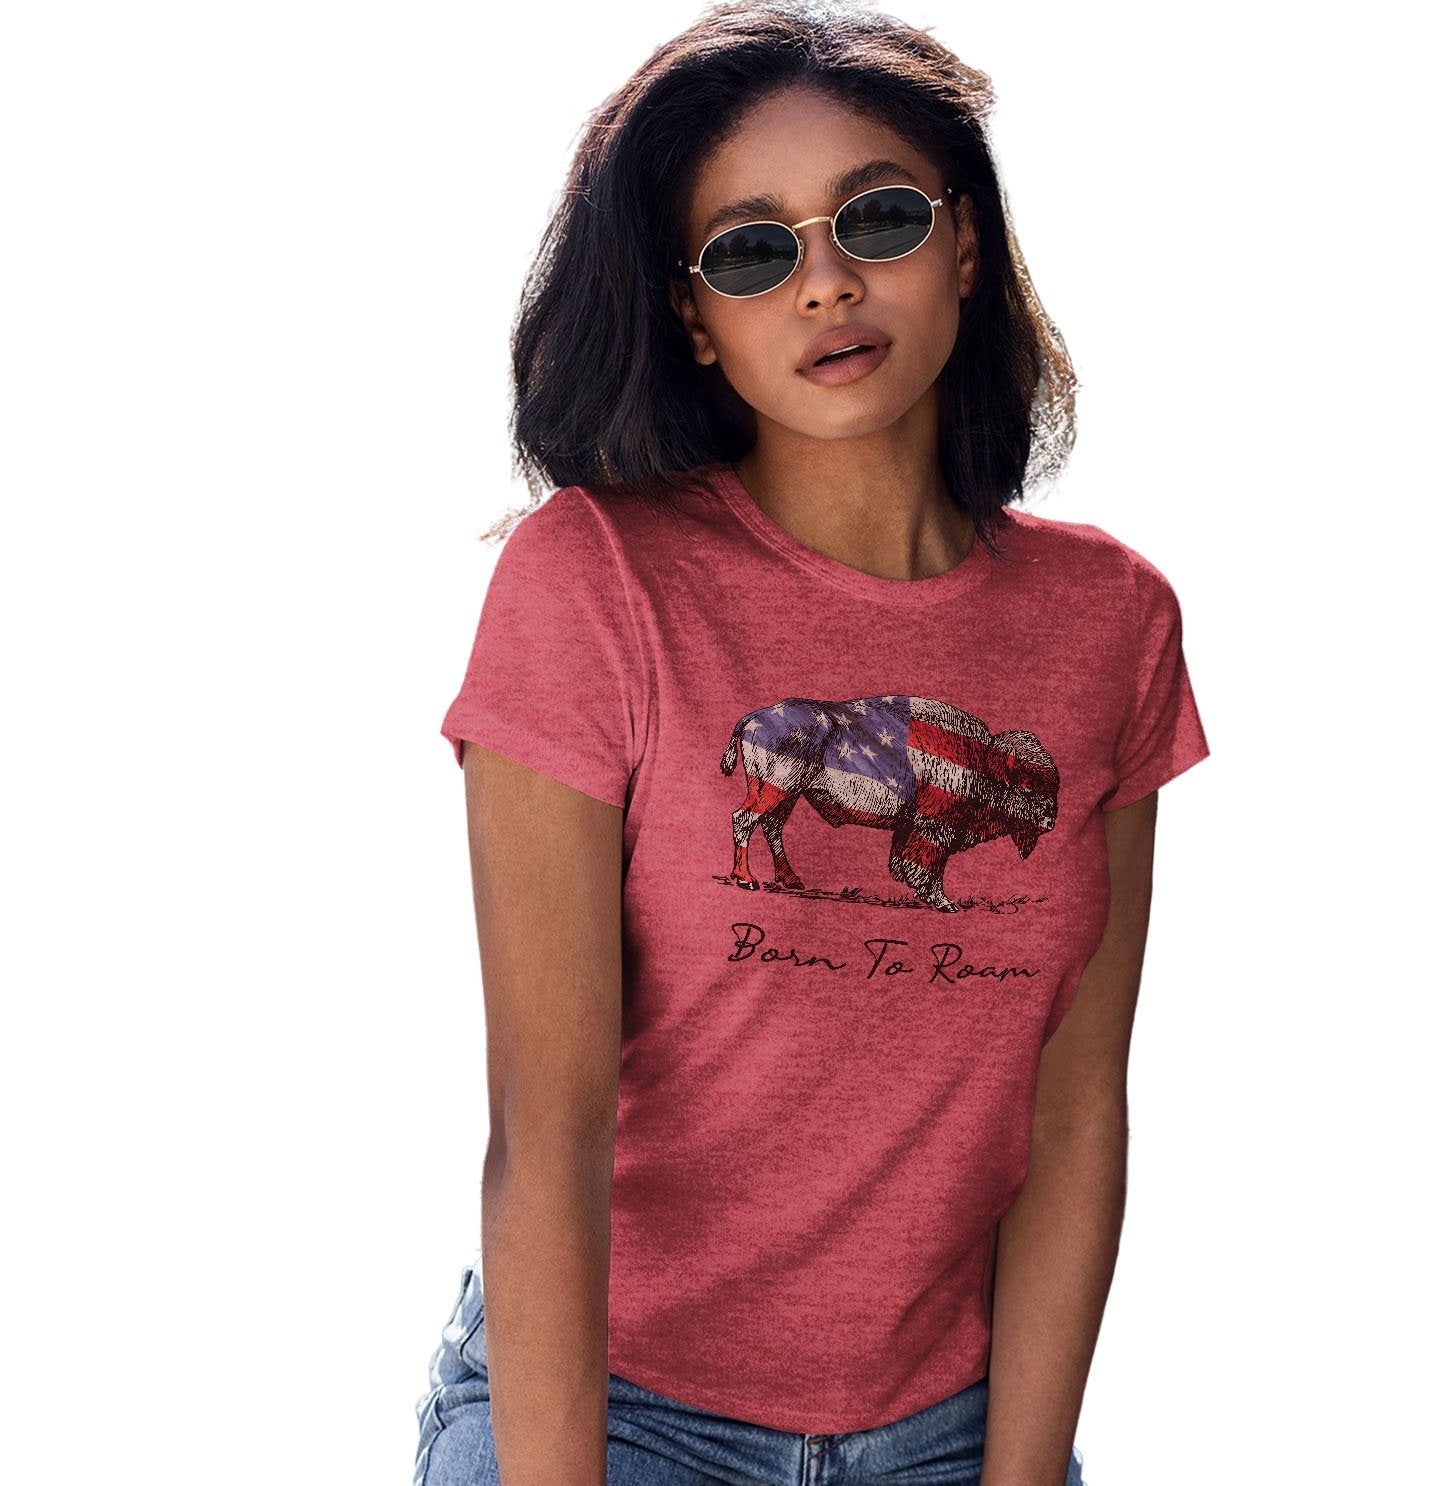 Buffalo Flag Overlay - Women's Tri-Blend T-Shirt